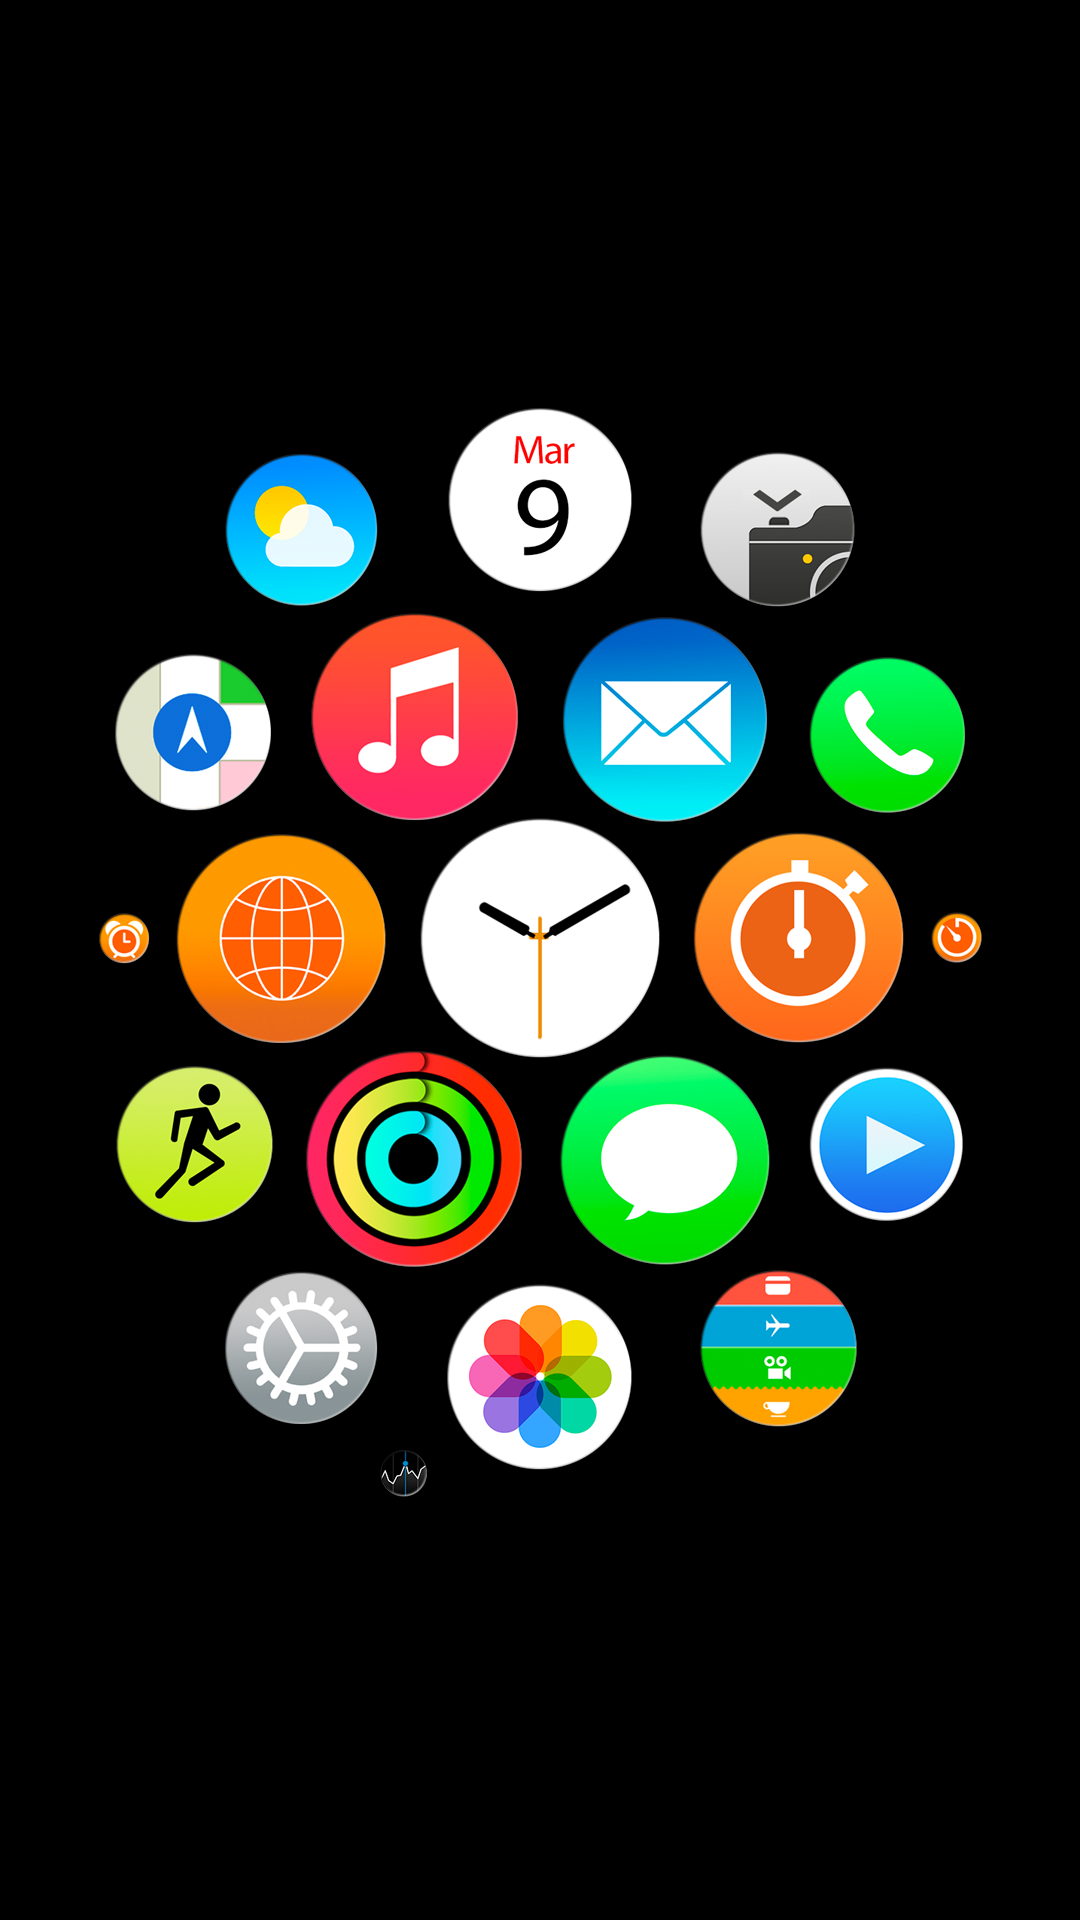  Apple Watch Hintergrundbild 1080x1920. Apple Watch Hintergrundbilder für iPhone, iPad und Computer › Macerkopf